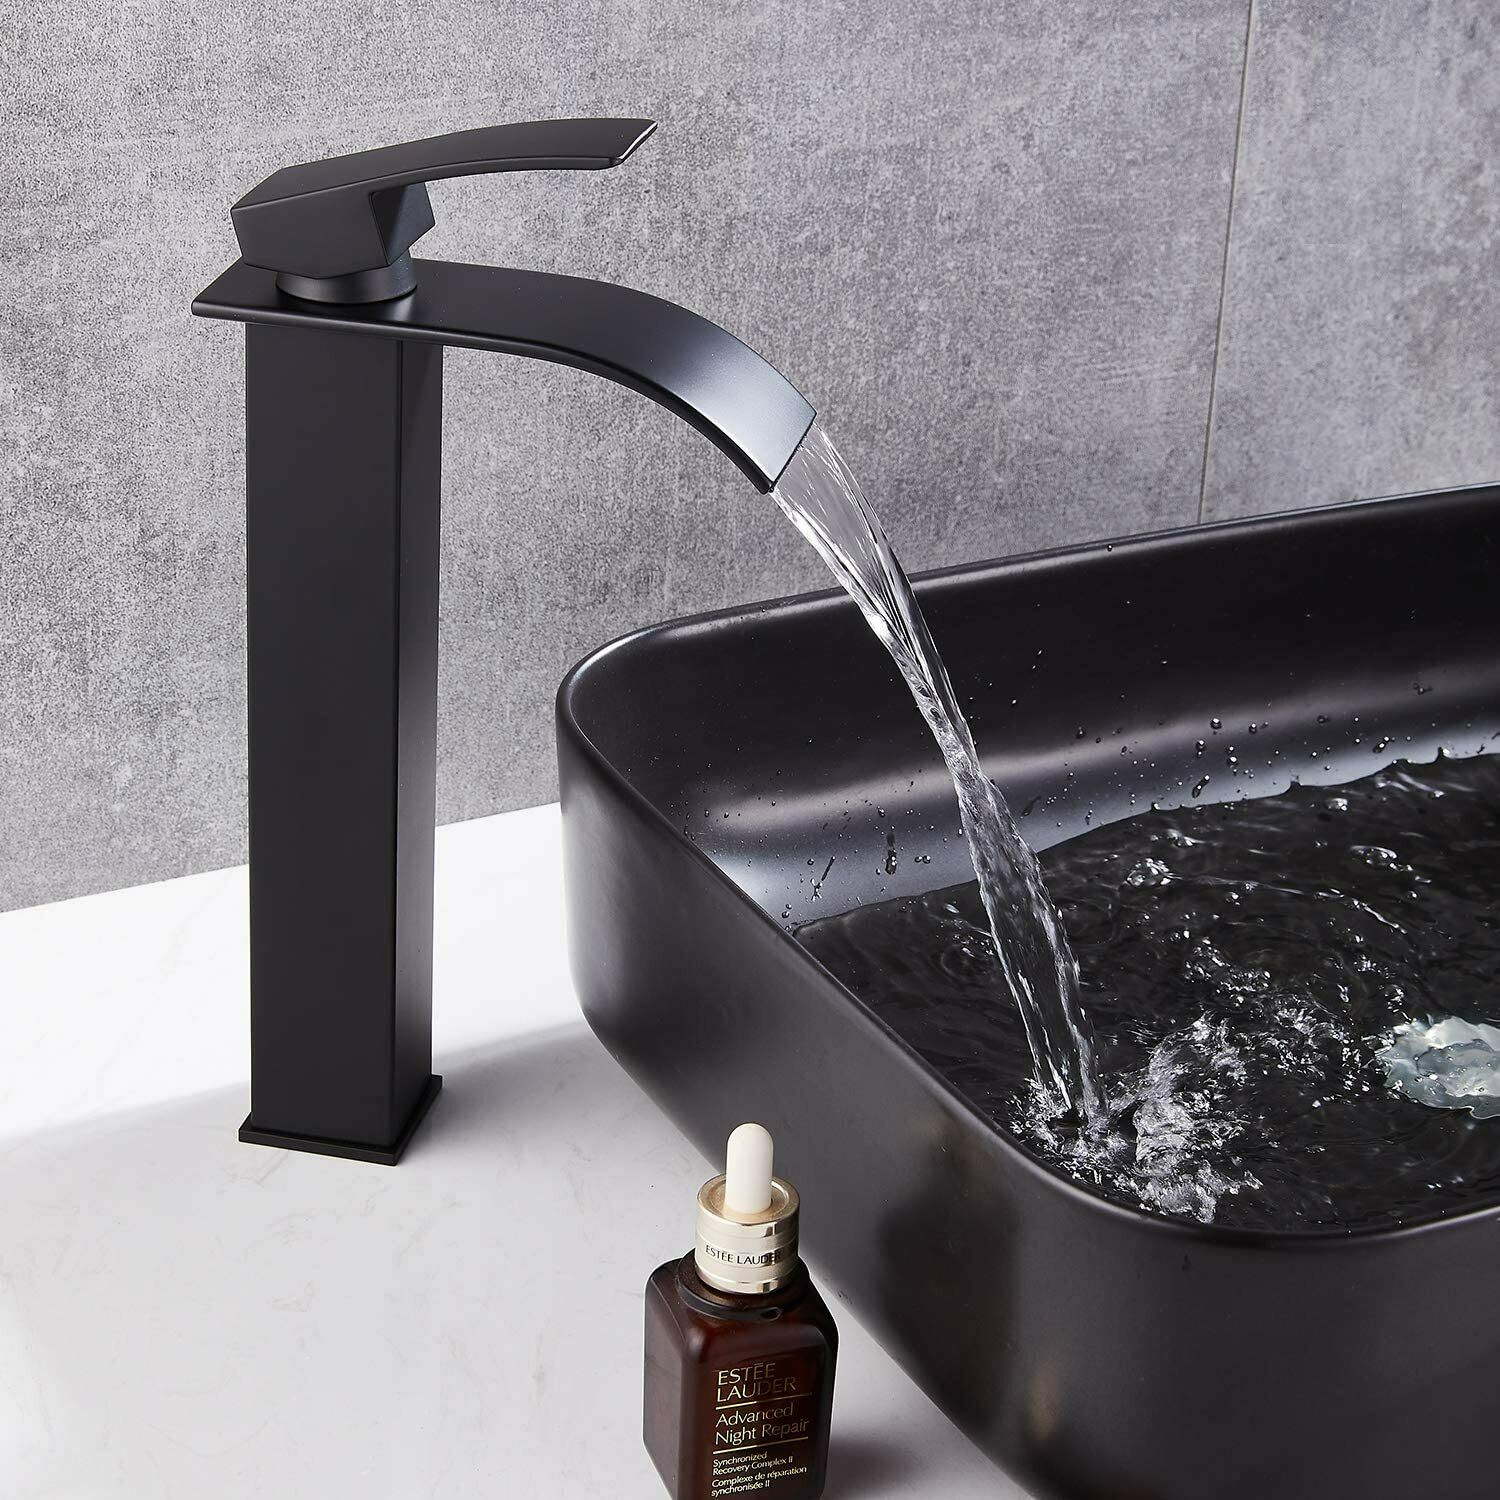 Rubinetto lavabo cromato nero, lavabo alto sottile, rubinetto bagno,  miscelatore acqua calda e fredda, rubinetto lavabo gru rubinetto bagno